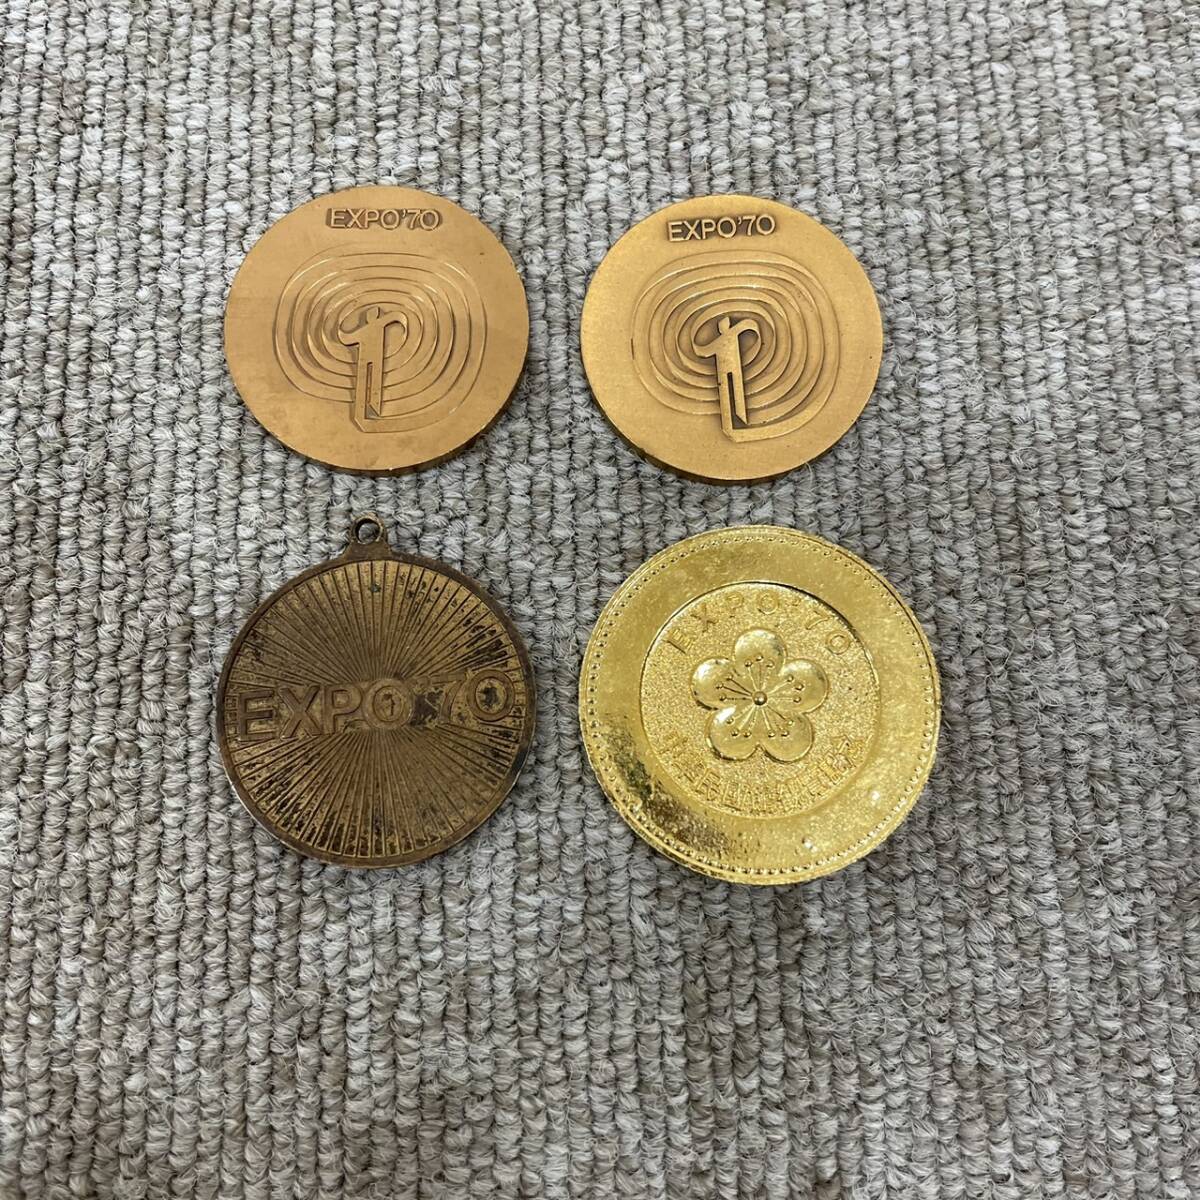 【TOA-5539】 1  йен ～  воспоминание   медаль   продажа    олимпийский    Япония 10000... EXPO  монетный двор    монета   золото    серебро   медь   воспоминание    коллекция   текущее состояние   хранение товара 